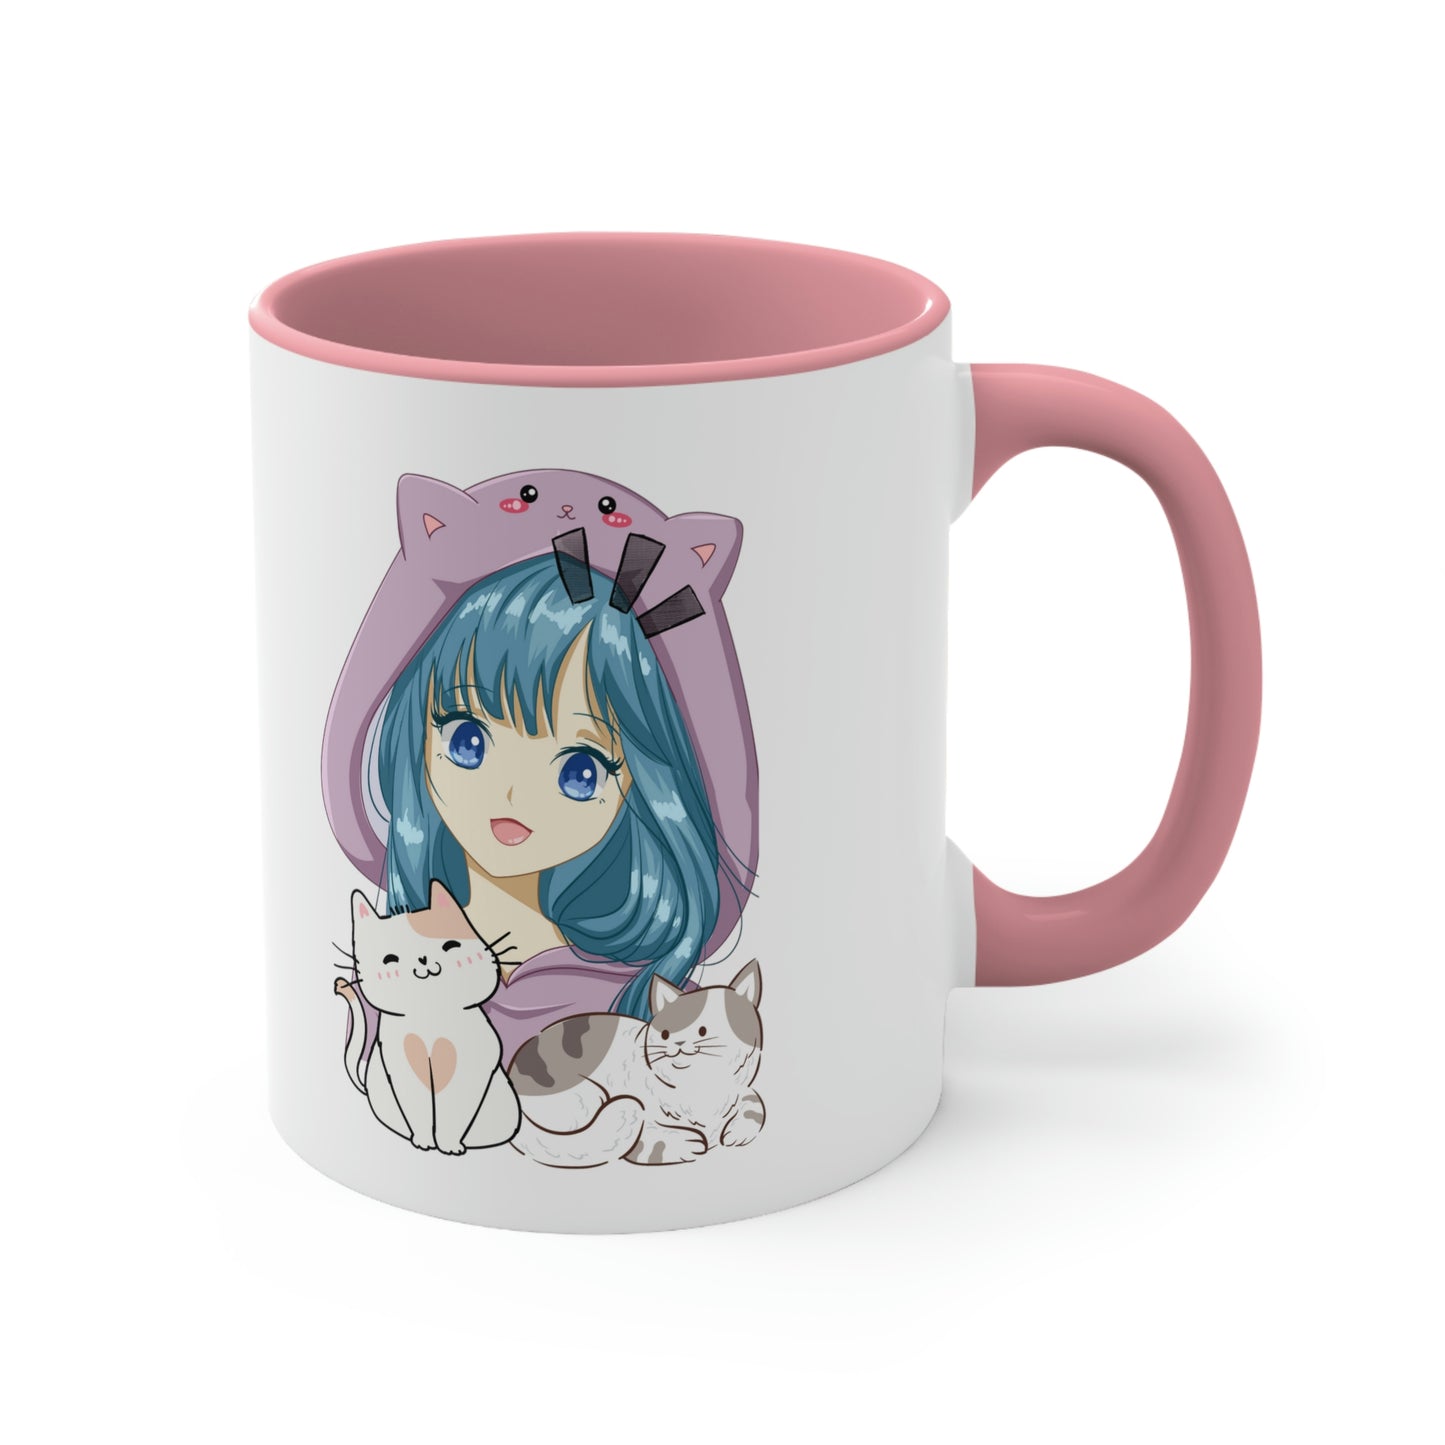 Anime Collection - Accent Coffee Mug, 11oz - Anime Kitties